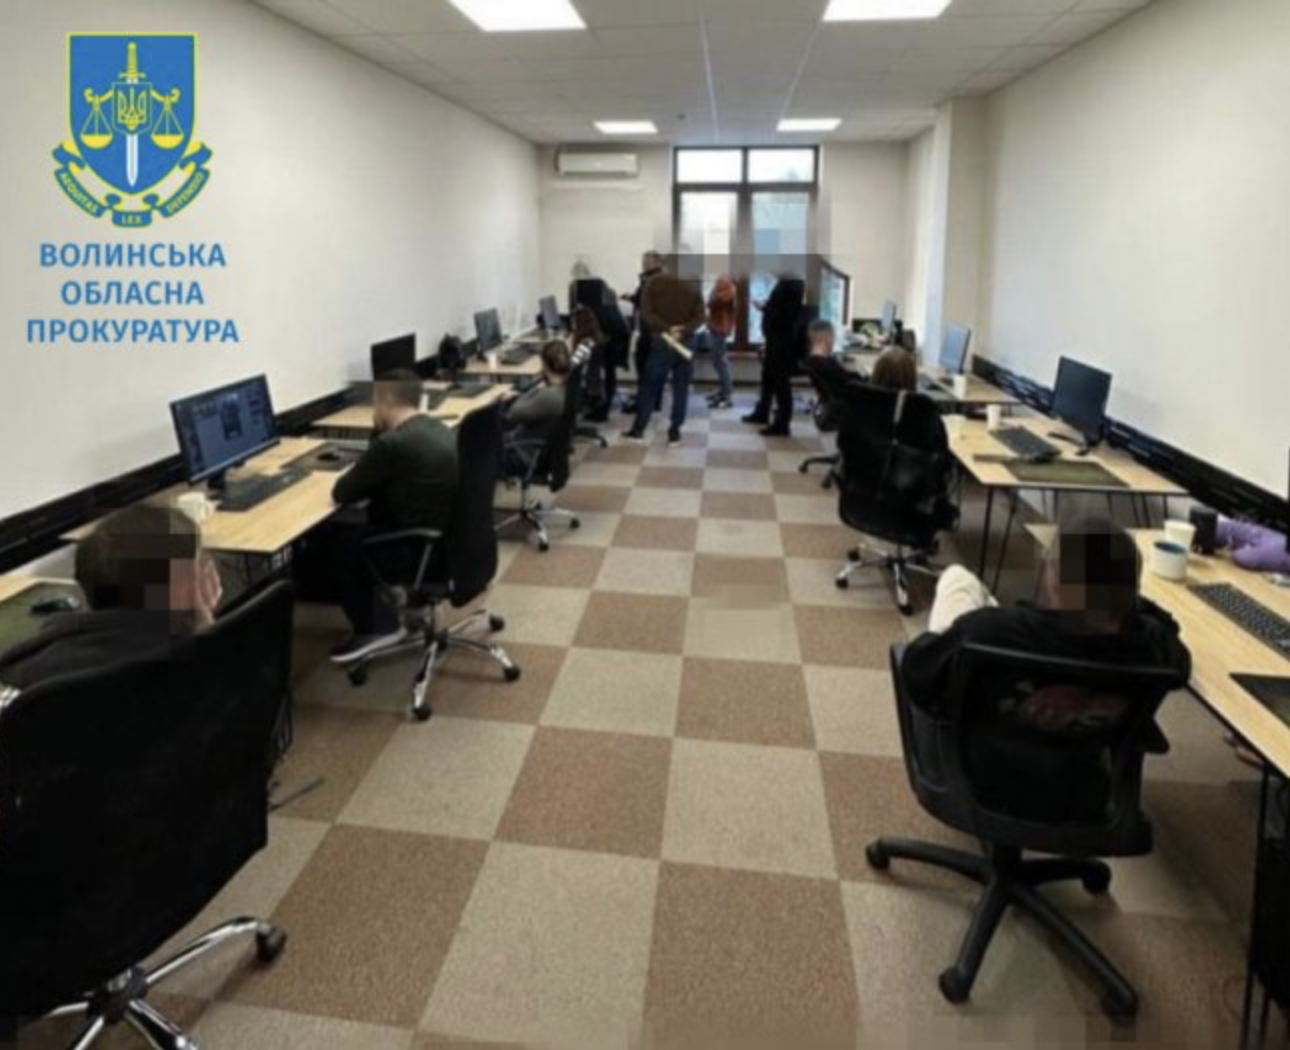 200 человек на Волыни работали в техподдержке российского нелегального онлайн-казино